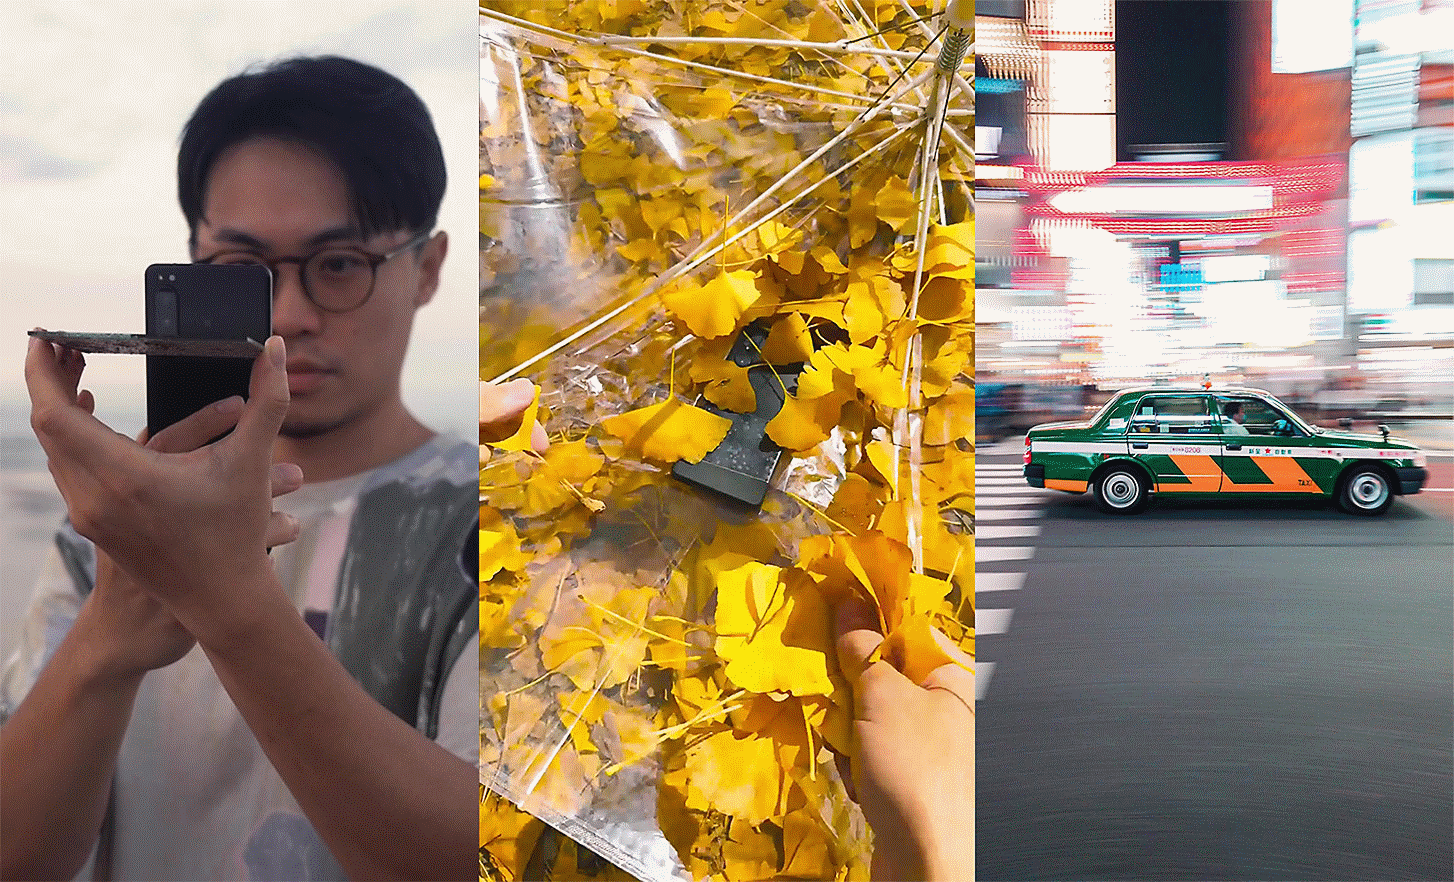 Tre portrætter side om side, på det venstre tager en person et billede, på det midterste ses en telefon imellem blade, og på det højre ses en bil i en by